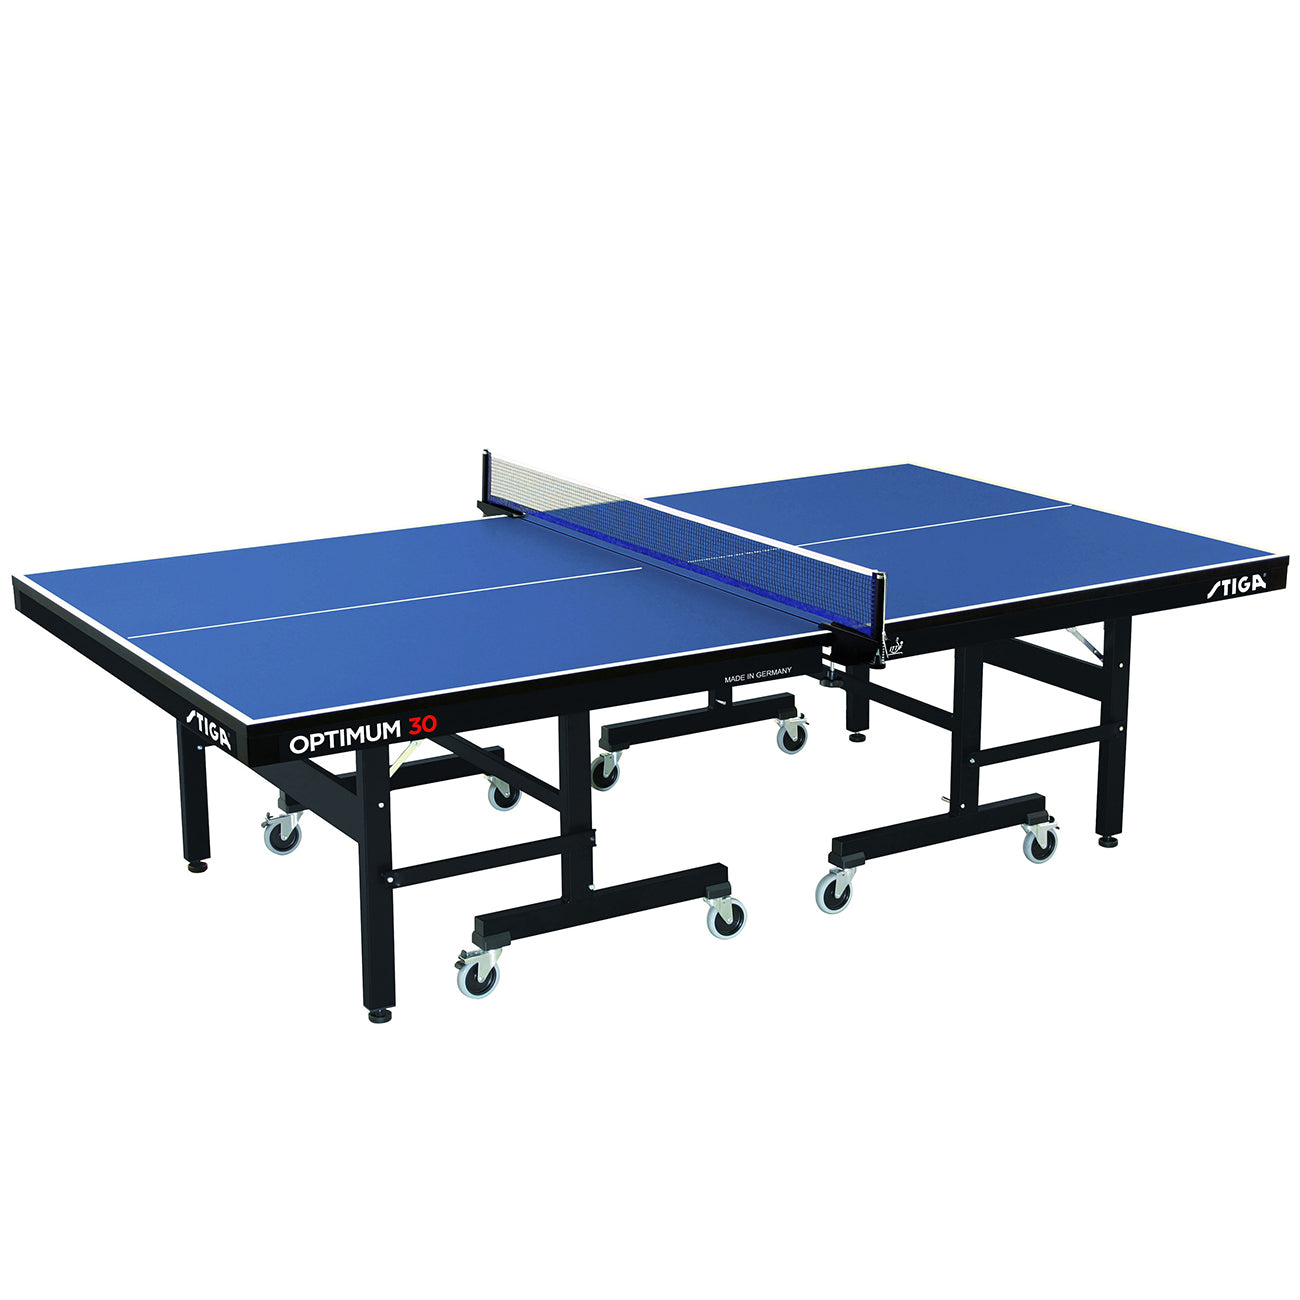 Stiga Optimum 30 Indoor Table Tennis Table